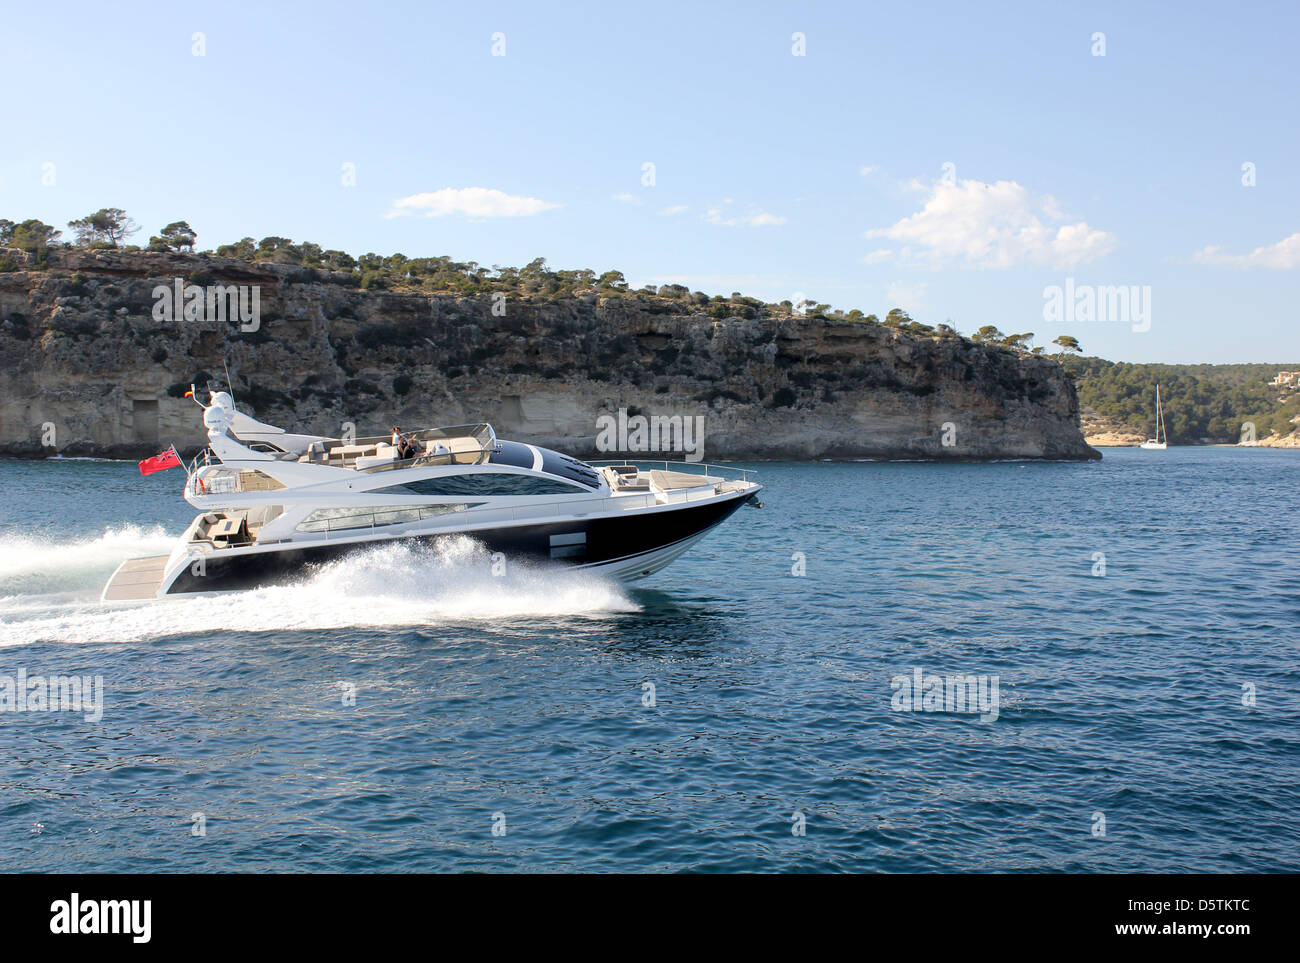 La nueva perla de 75 yate de lujo - destinados a Palma Boat Show 2013 - sometidos a las pruebas en el mar cerca de Portals Vells, Mallorca. Foto de stock